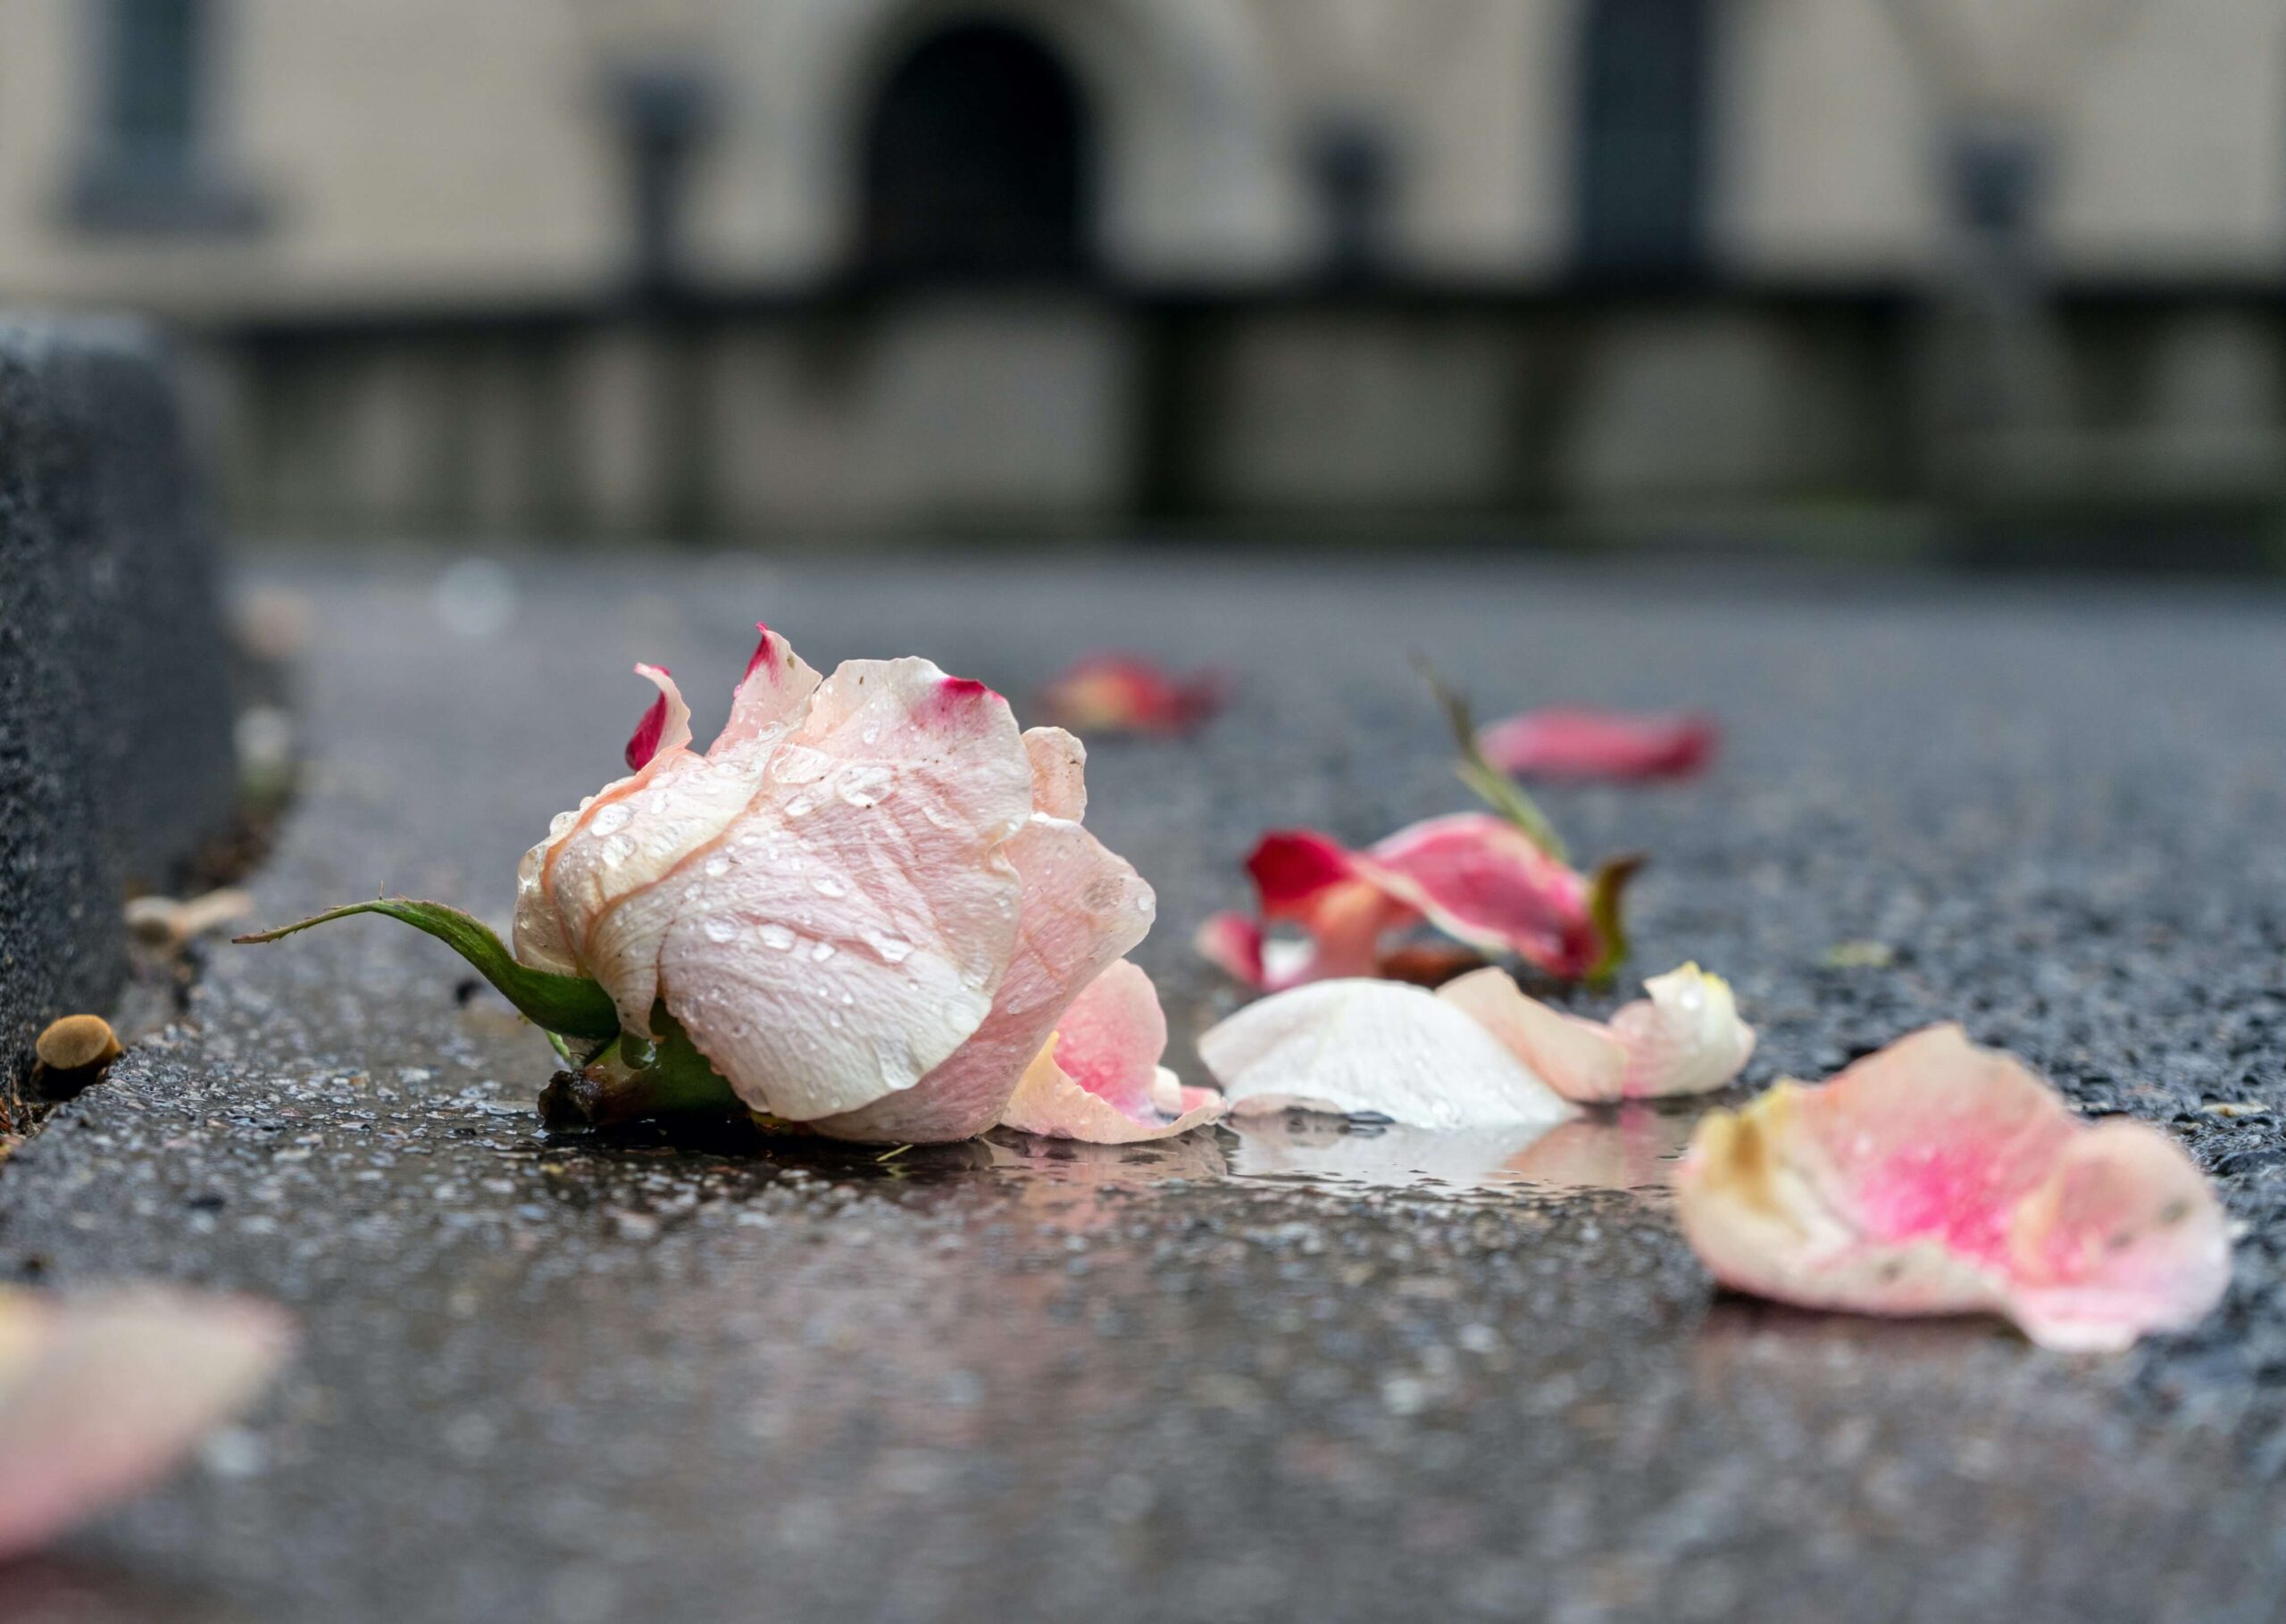 τριαντάφυλλο στον δρόμο σαν μεταφορά για την απώλεια κύησης, νεογνική απώλεια, αποβολή